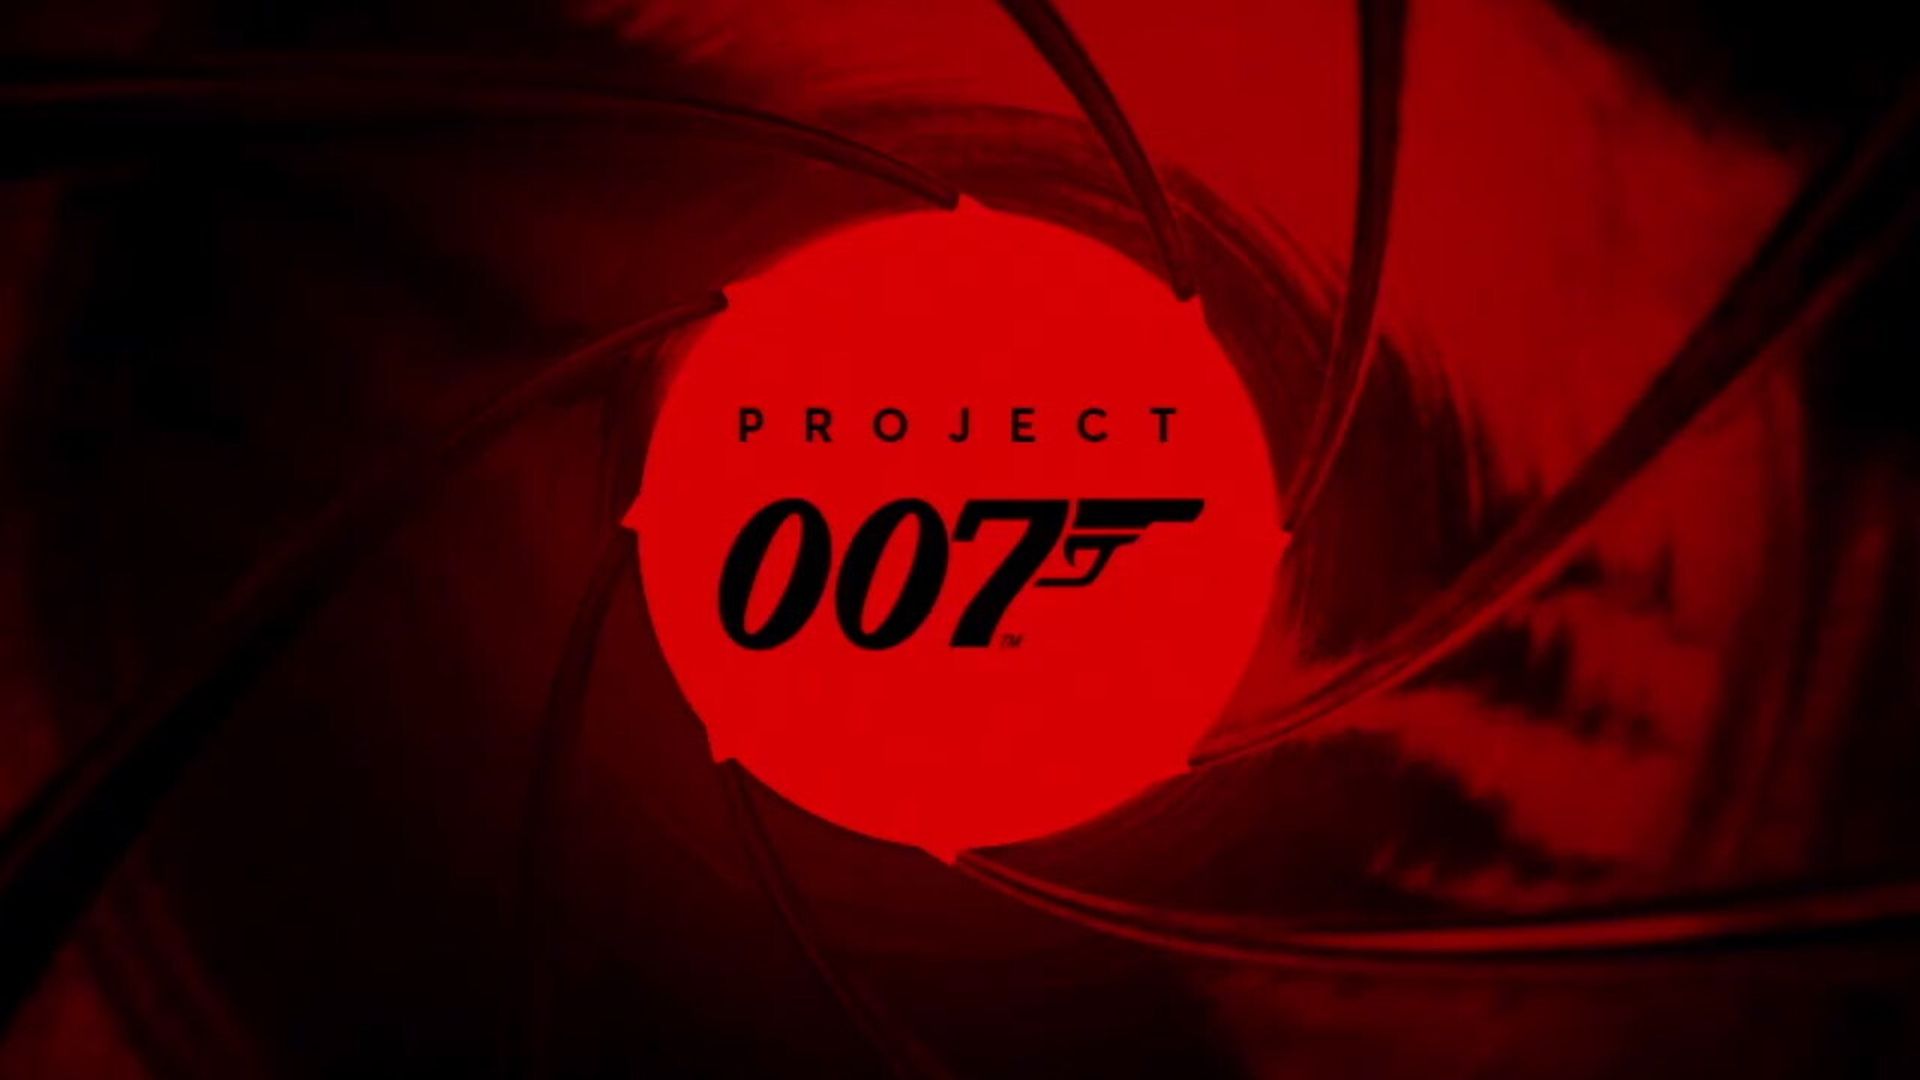 بازی James Bond Project 007 مانند Hitman خواهد بود